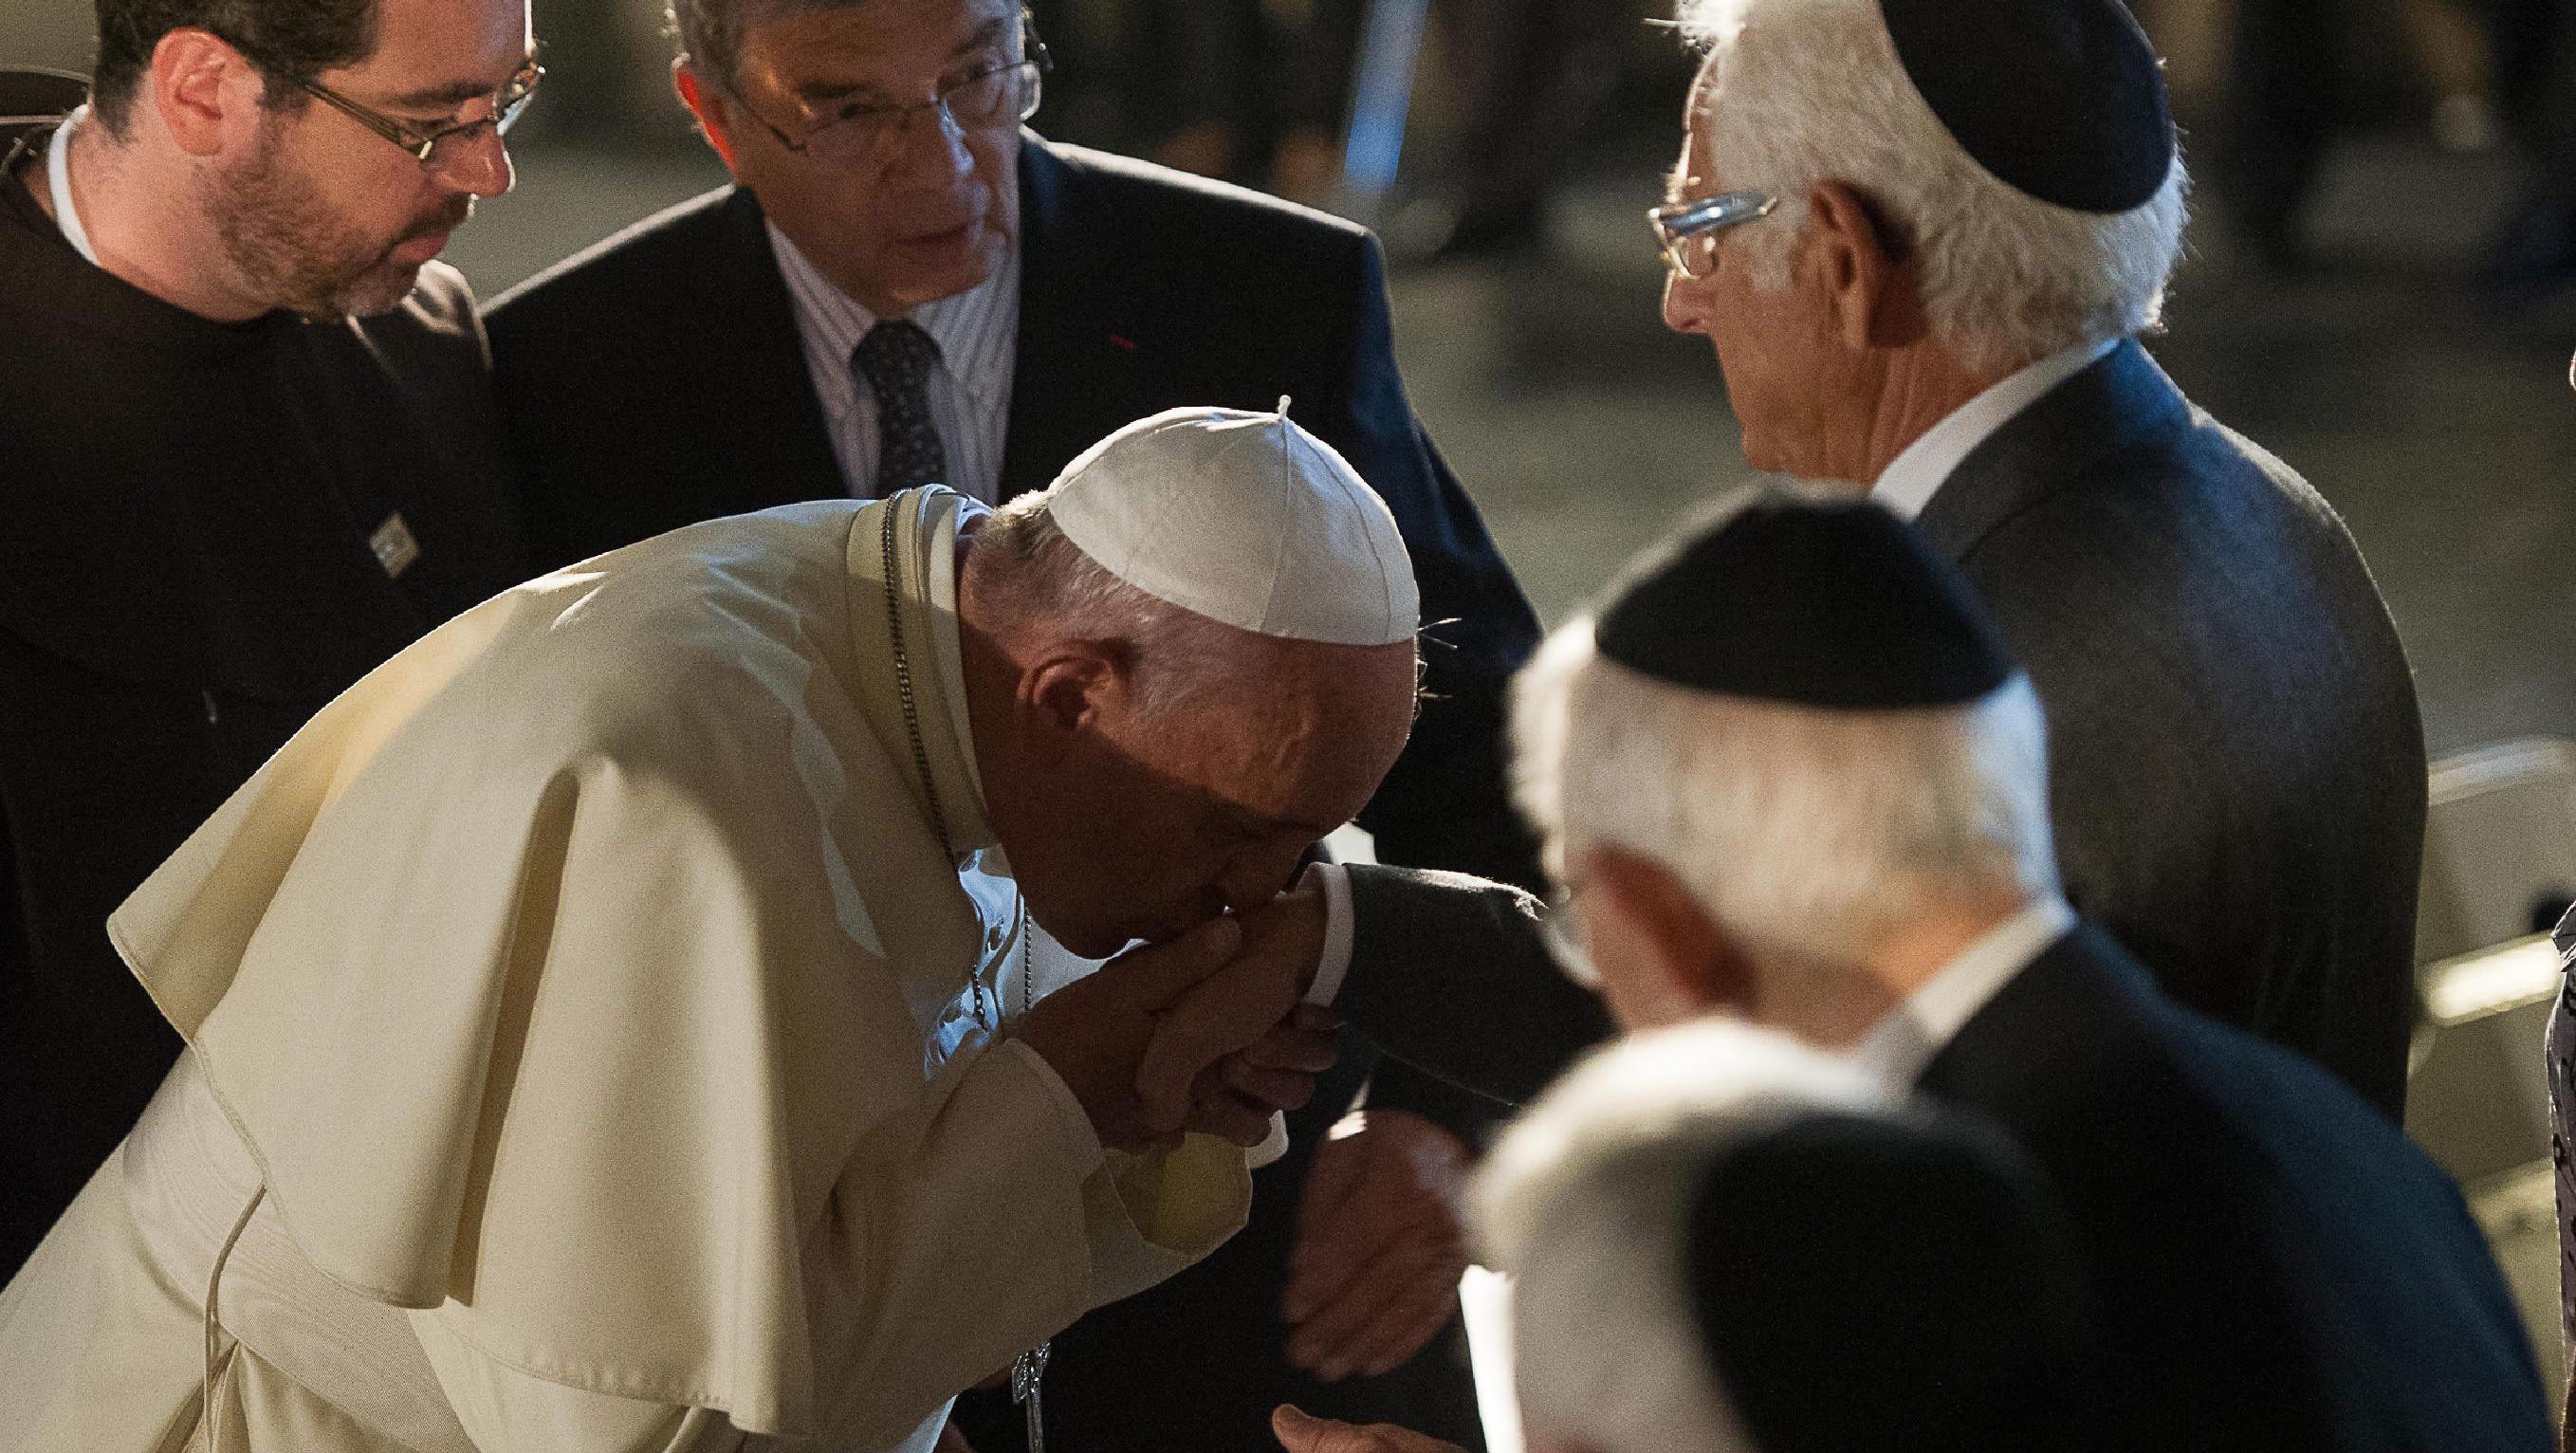 Римский еврей. Папа Римский Франциск еврей. Папа Римский целует руку Рокфеллеру. Папа Римский Франциск целует руку. Папа Франциск и Рокфеллер.